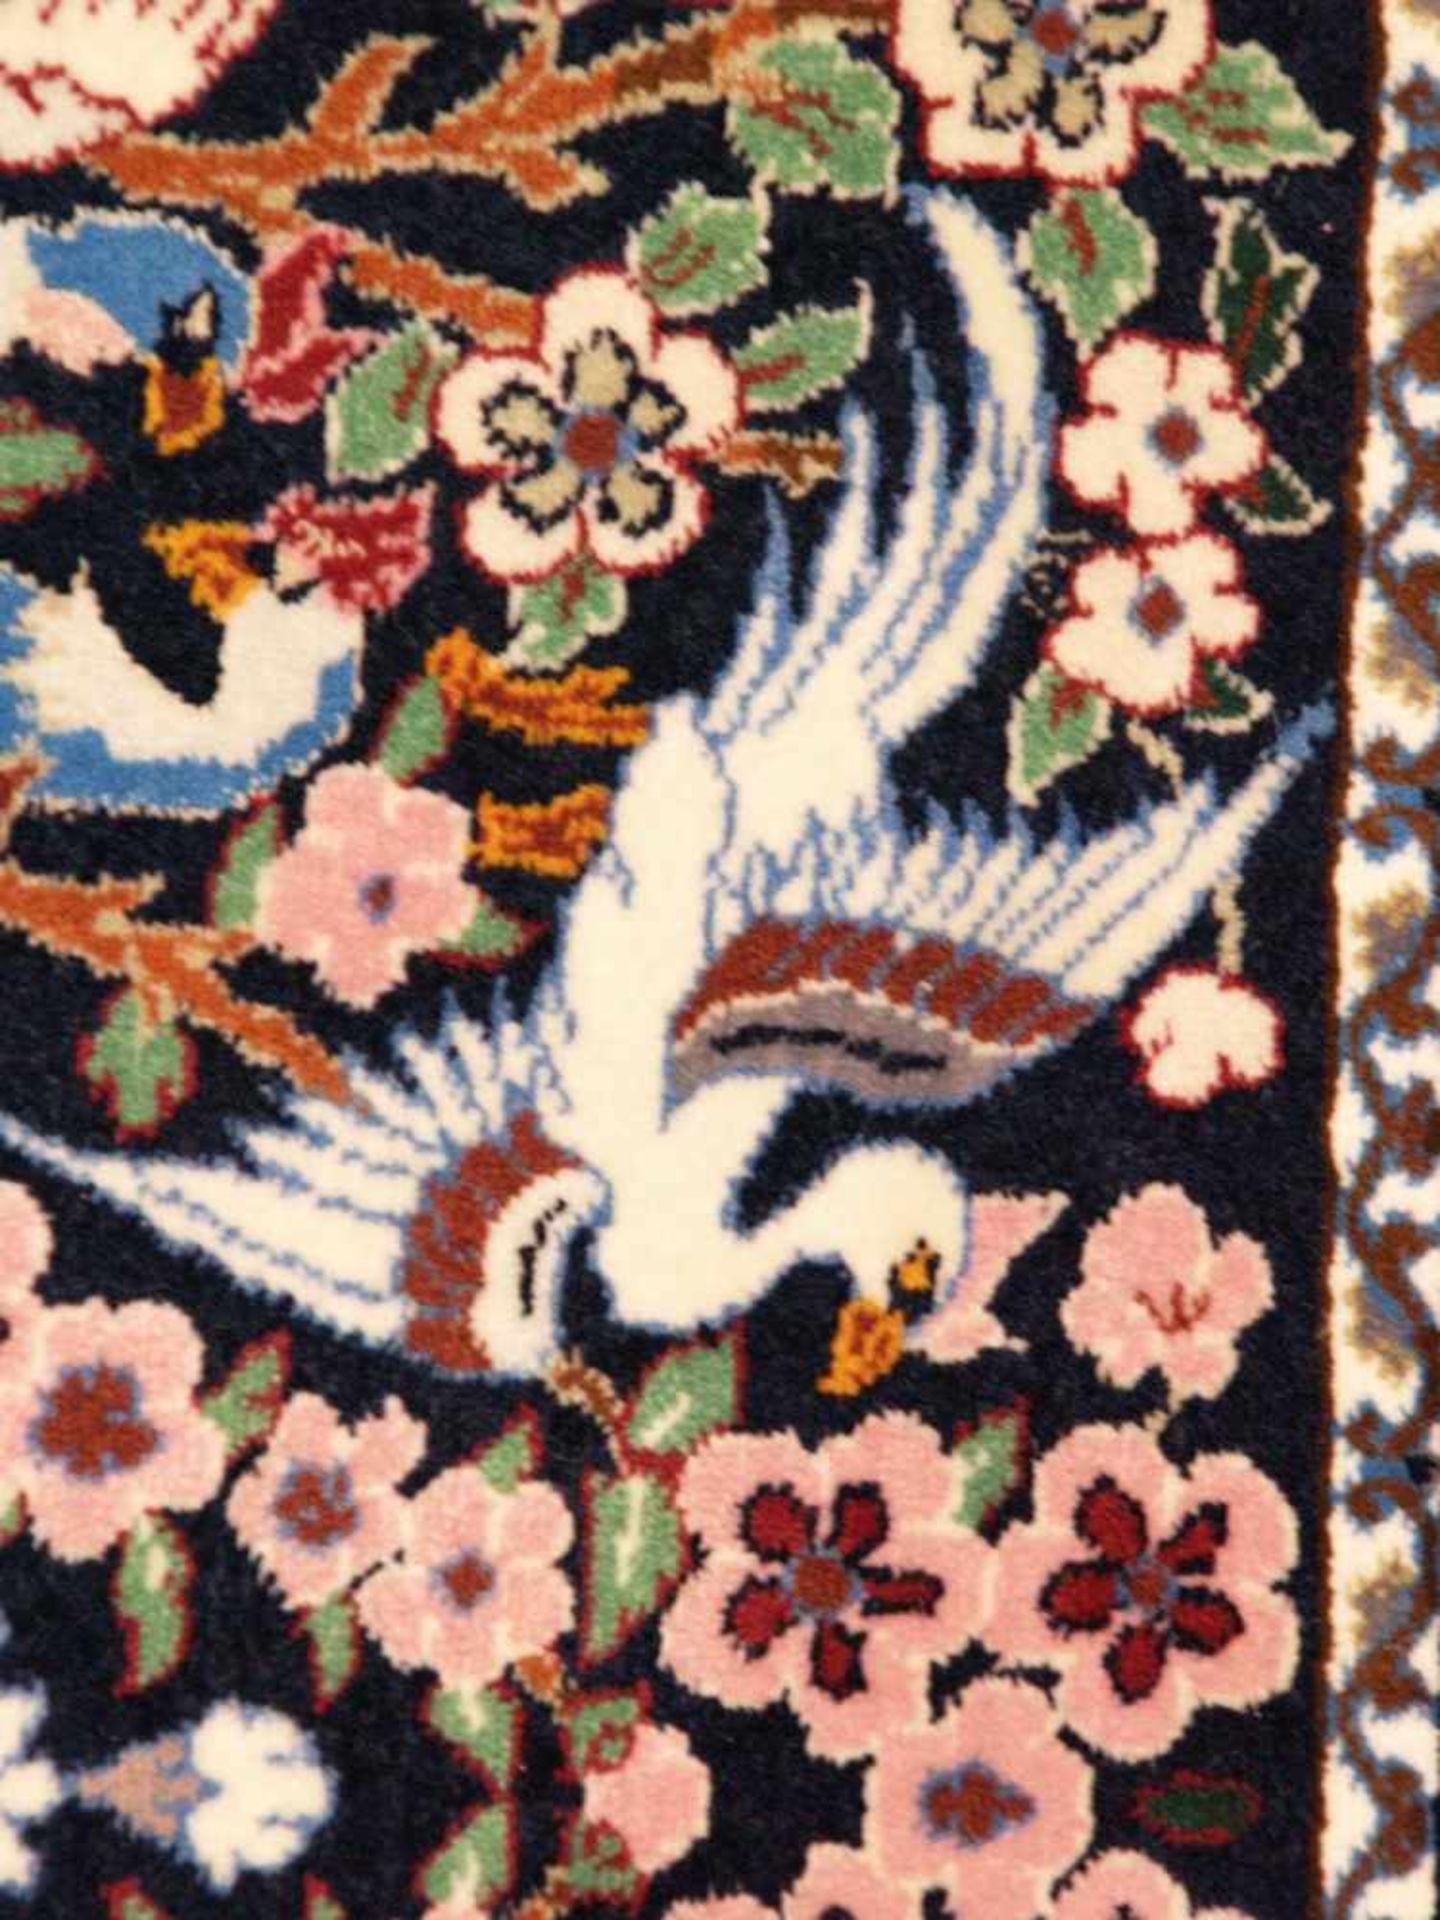 Orientteppich - Wolle und Seide, blaugrundig, zentrale florale Kartusche, gerahmt von Vögeln, - Bild 6 aus 11